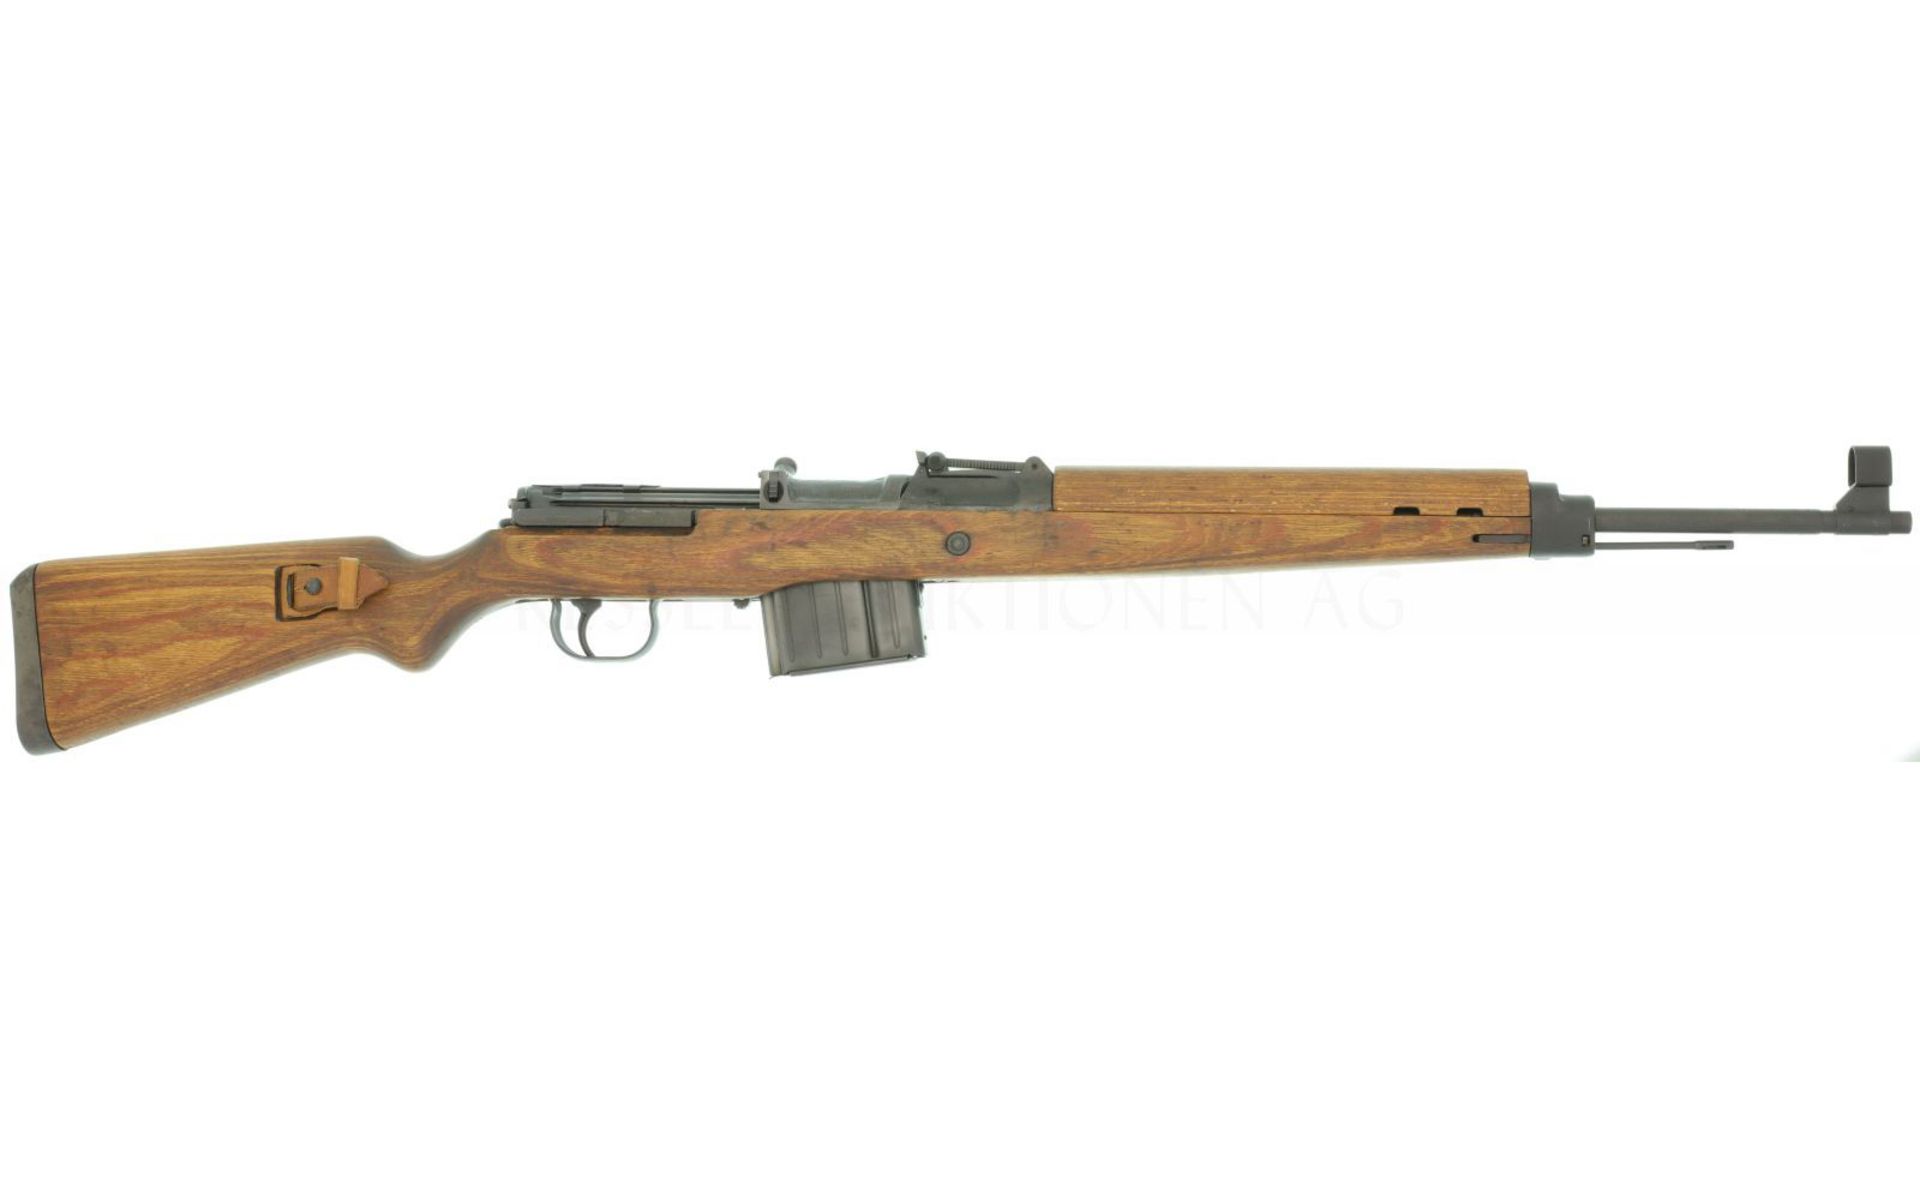 Selbstladegewehr, G43, Fertigung ac44 (Carl Walther), Kal. 8x57IS